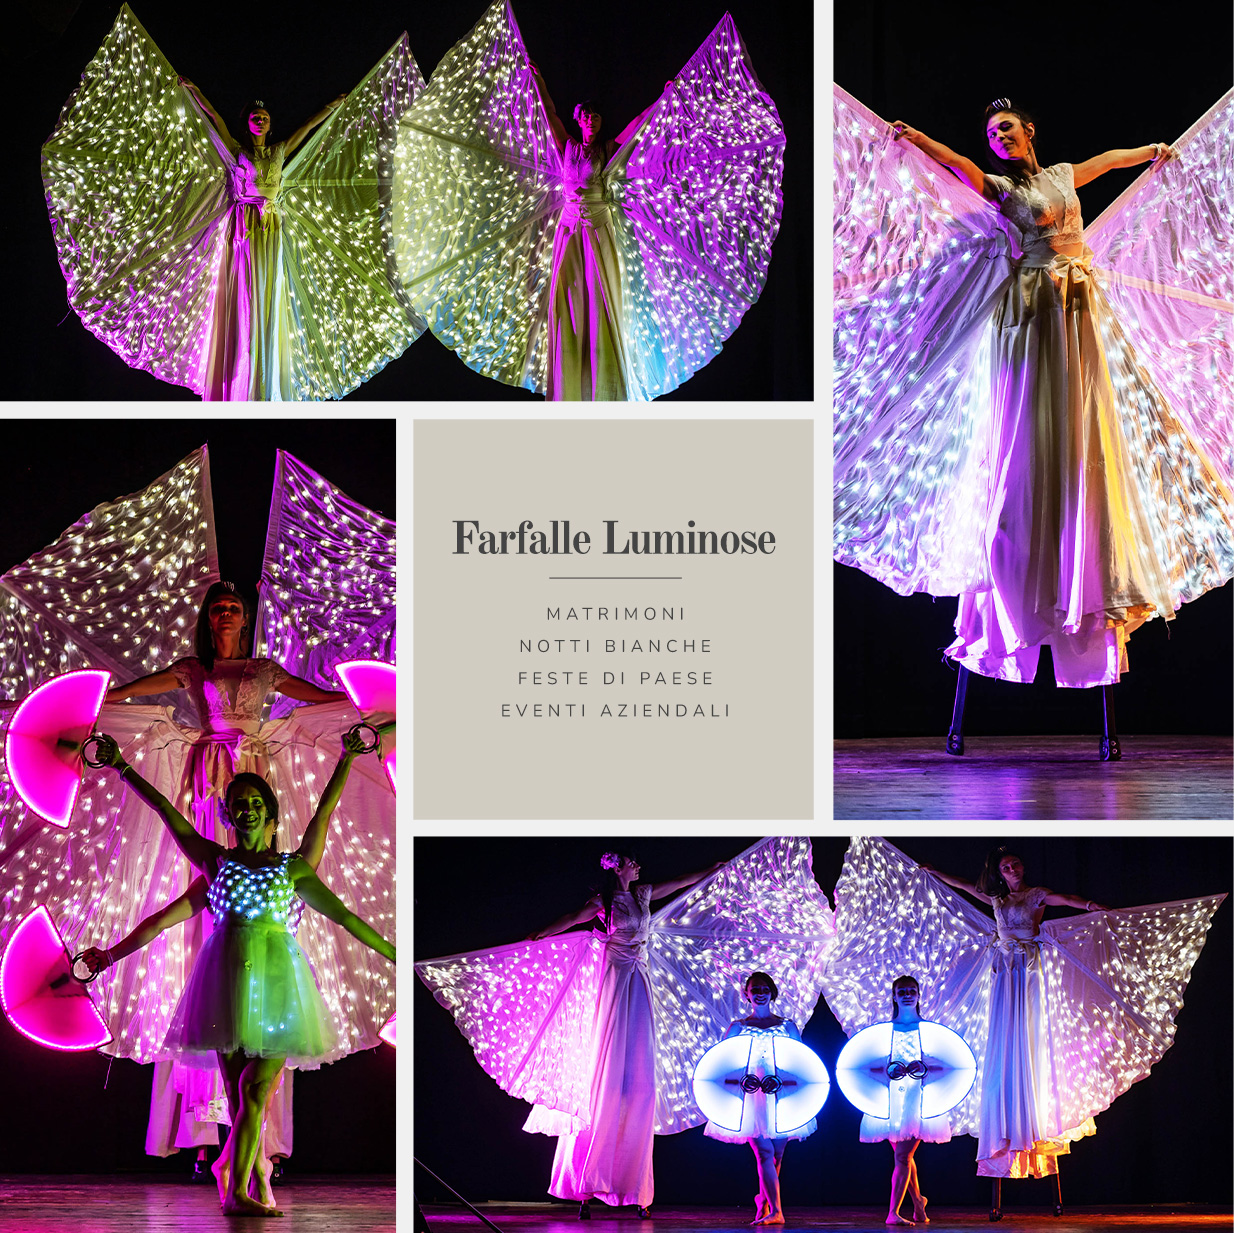 Spettacolo Farfalle Luminose per matrimoni, notti bianche, feste di paese ed eventi aziendali